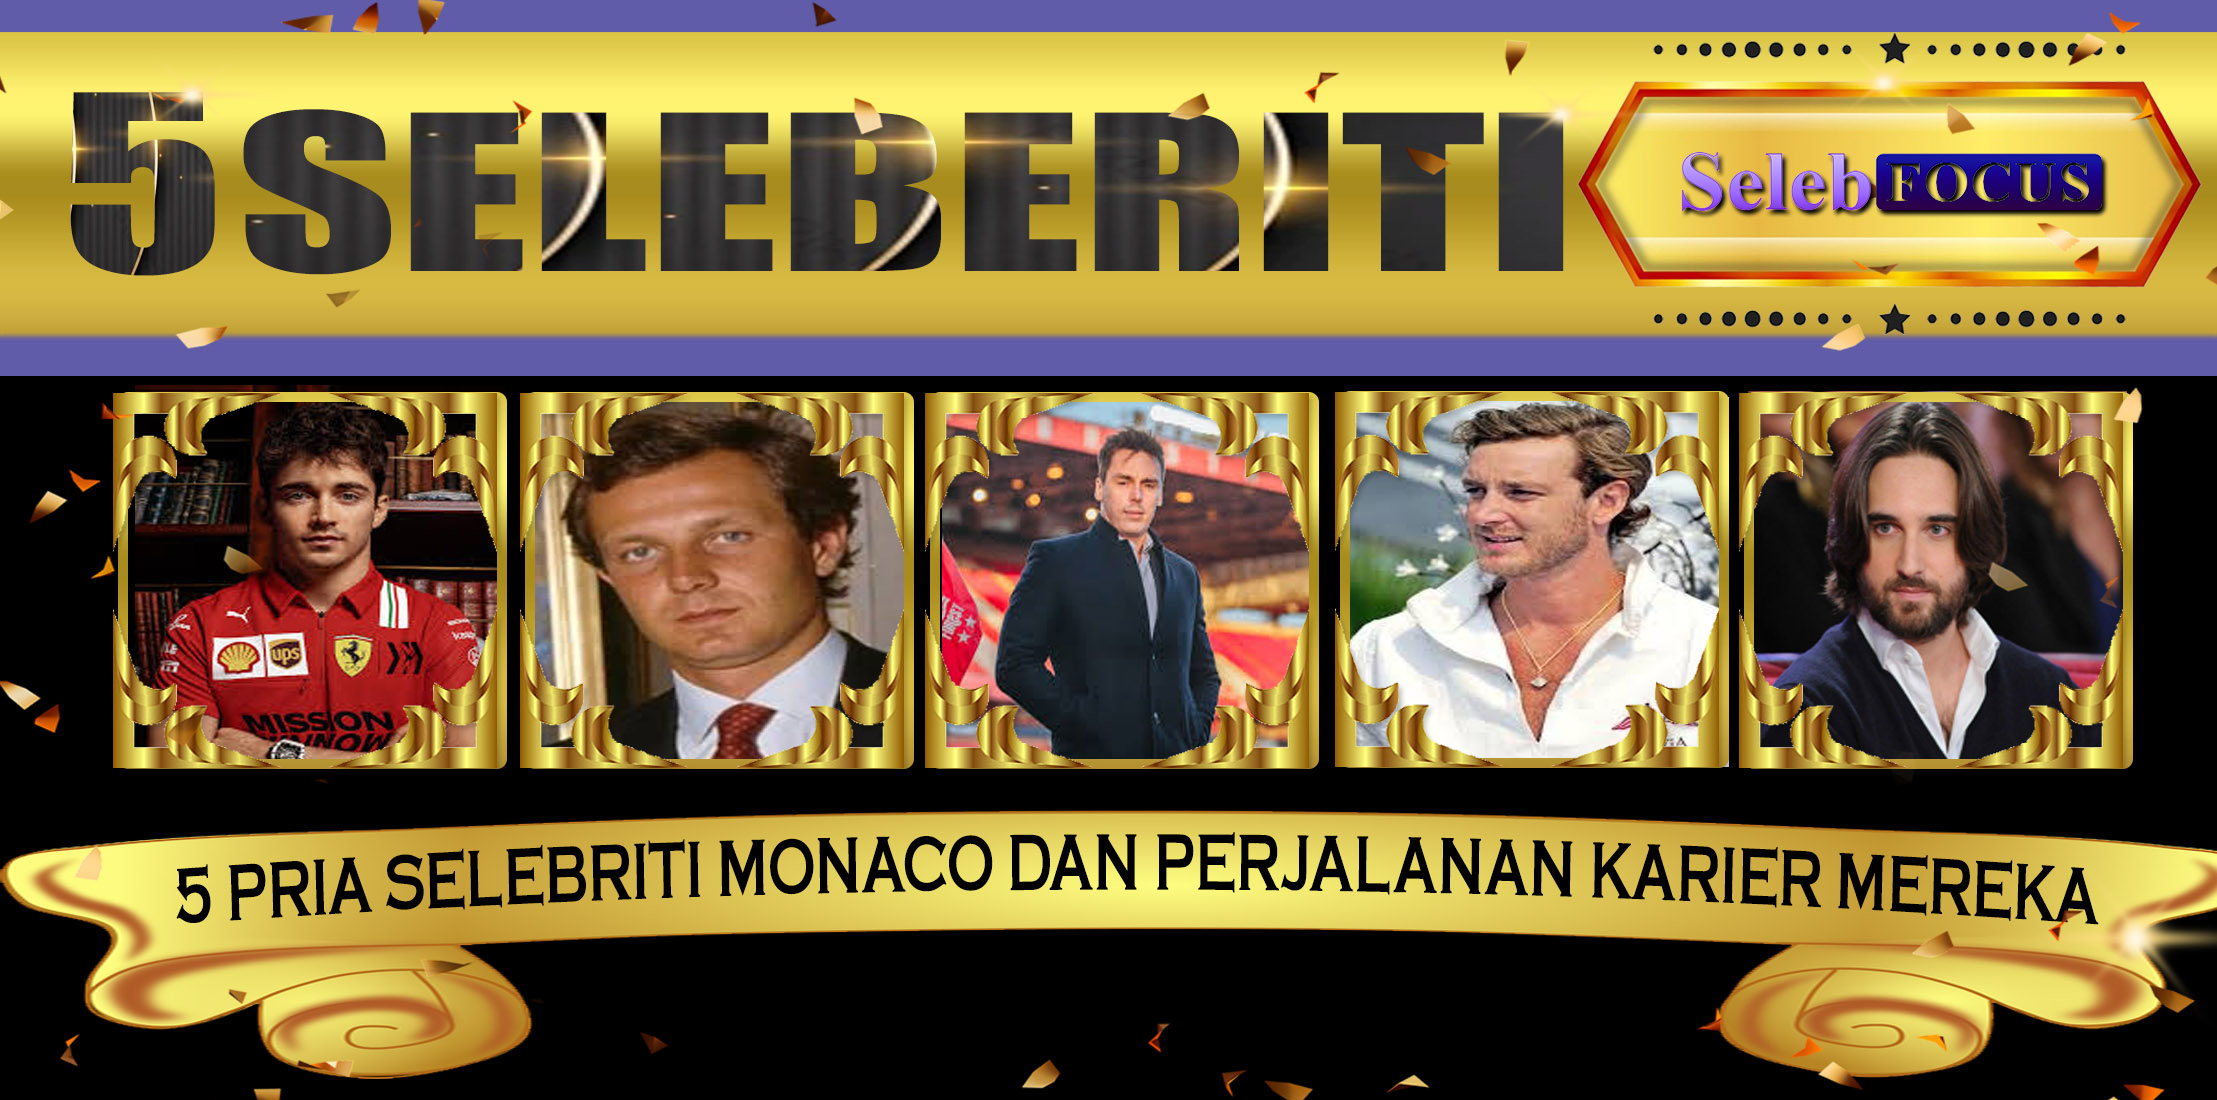 5 Pria Selebriti Monaco dan Perjalanan Karier Mereka